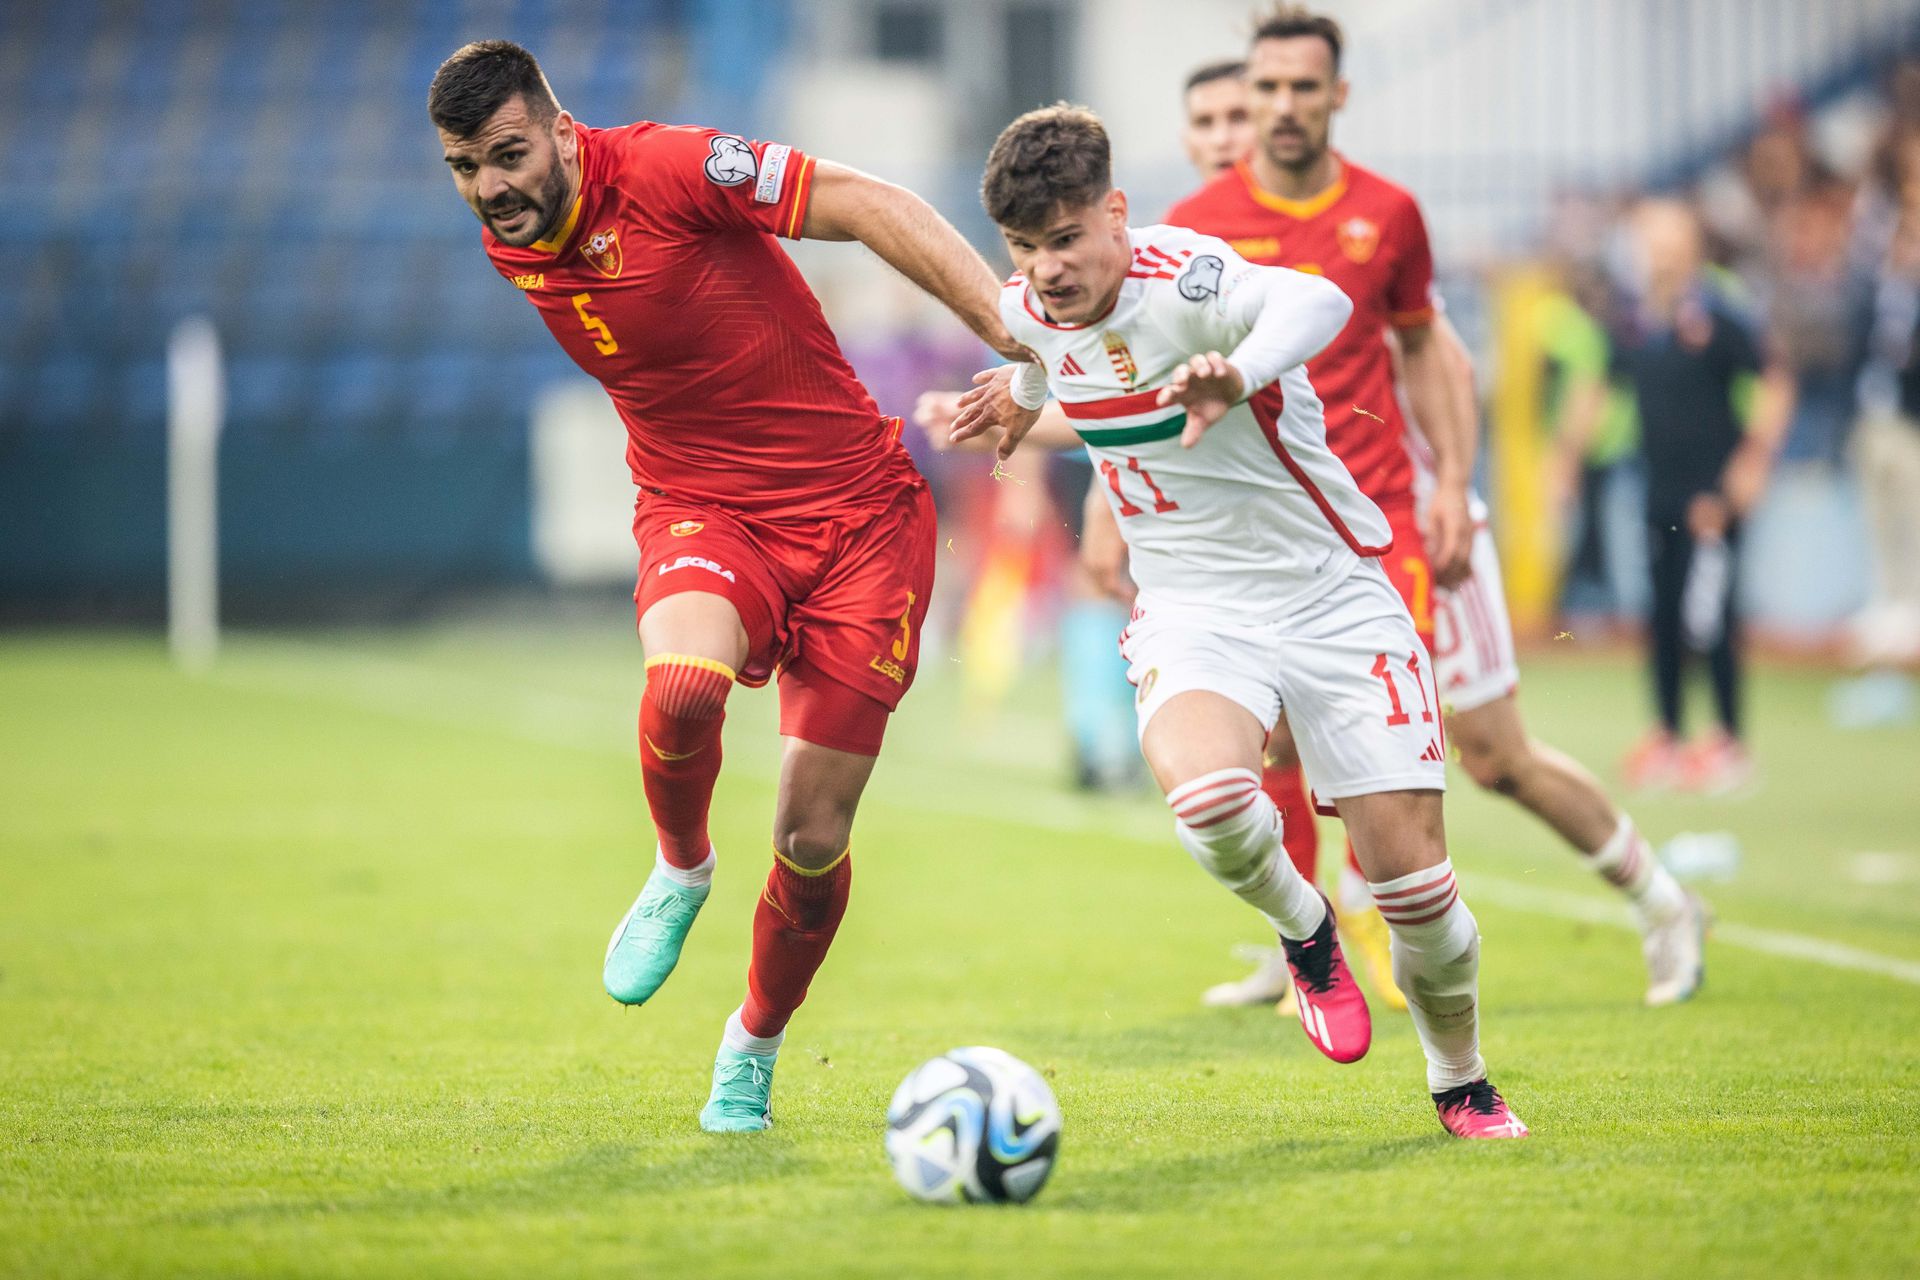 Kerkez Milos küzdött a bal oldalon, de sem a légiós, sem a válogatott nem szerzett gólt Podgoricában. (Fotó: Zsolnai Péter)